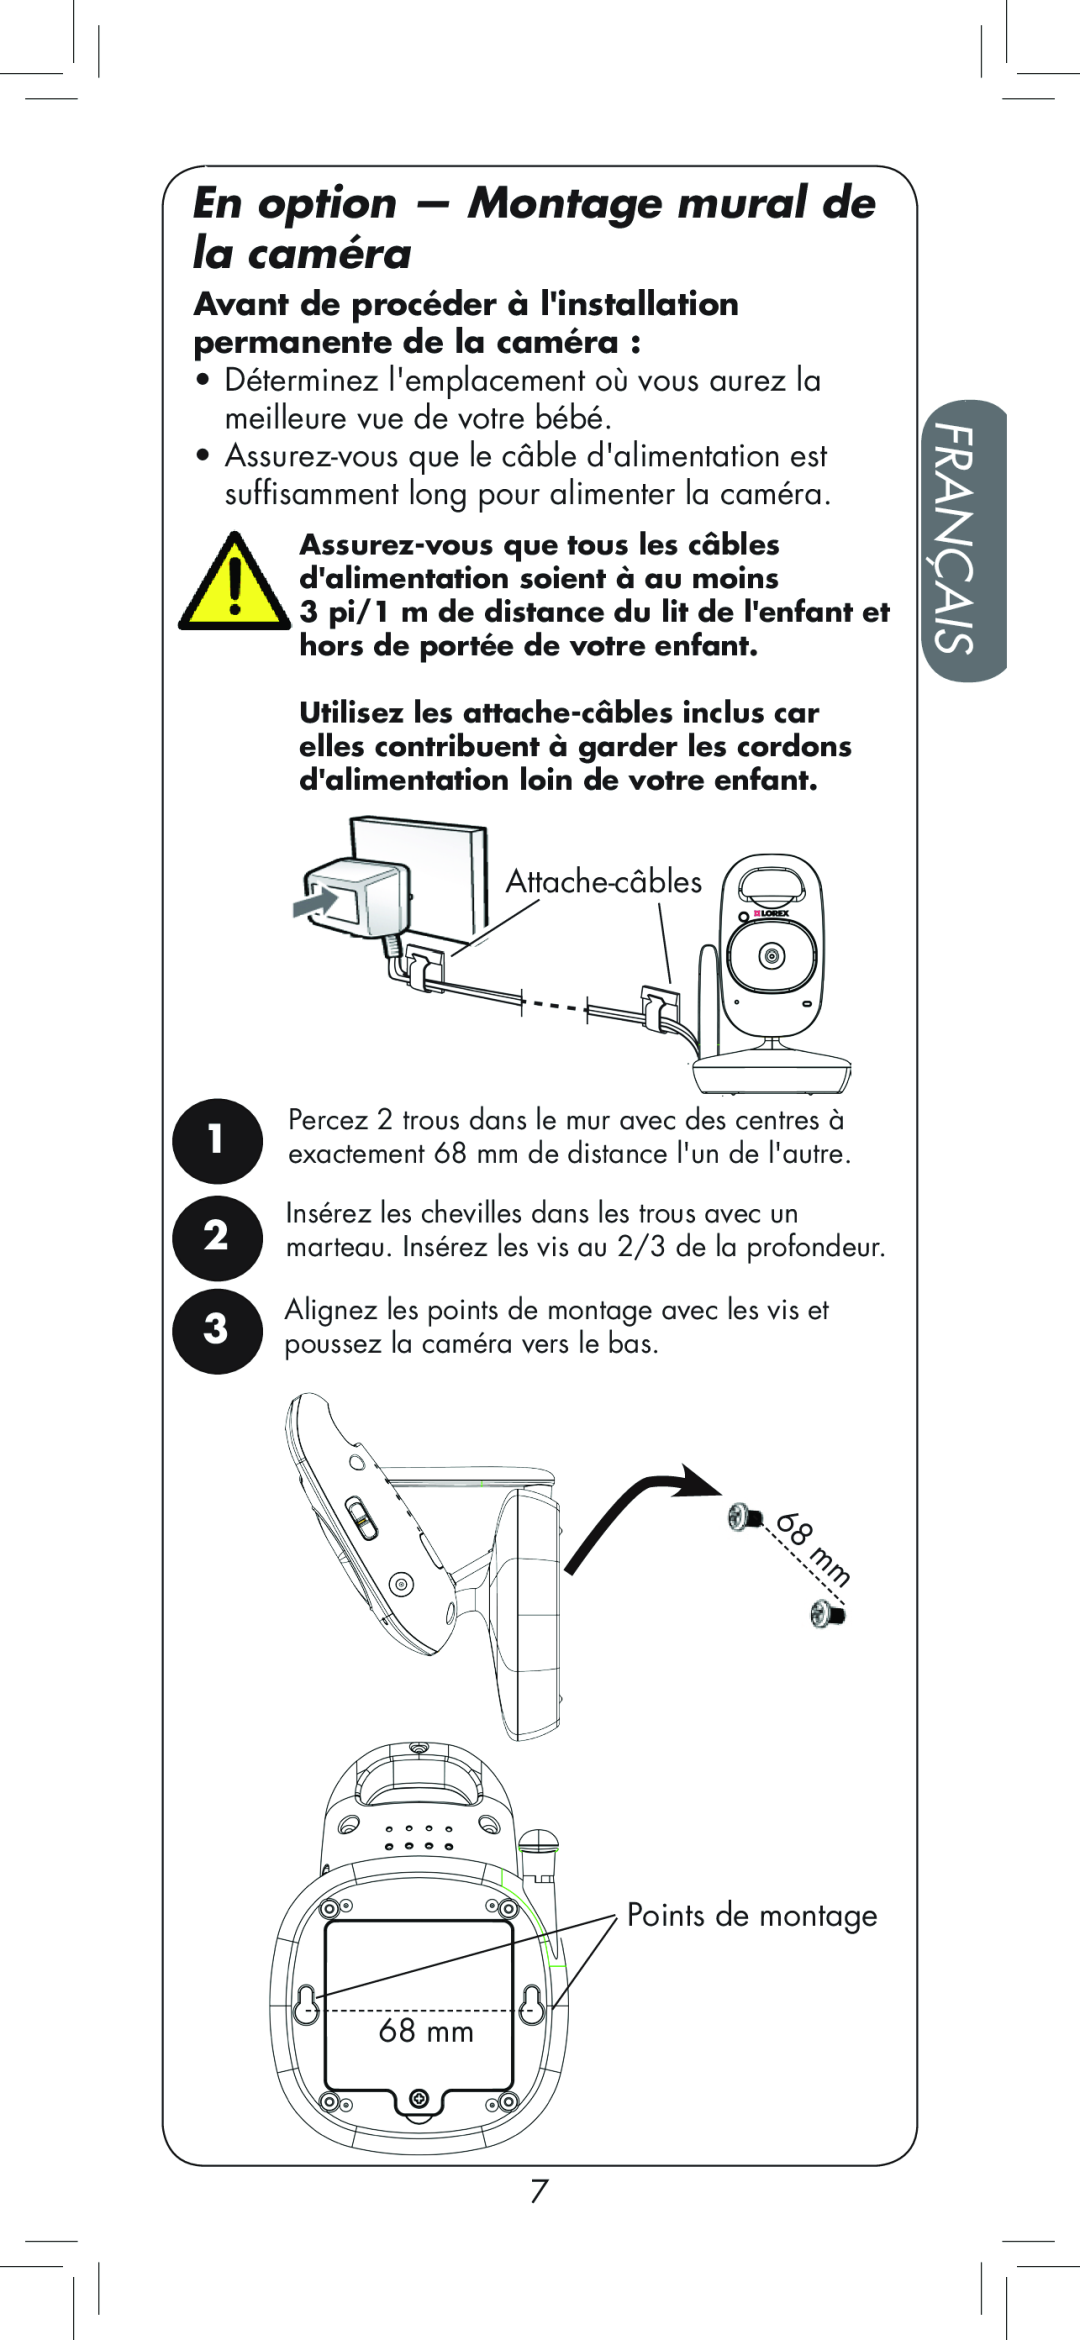 LOREX Technology BB2411 manual En option — Montage mural de la caméra, Français, Attache-câbles, Points de montage 68 mm 